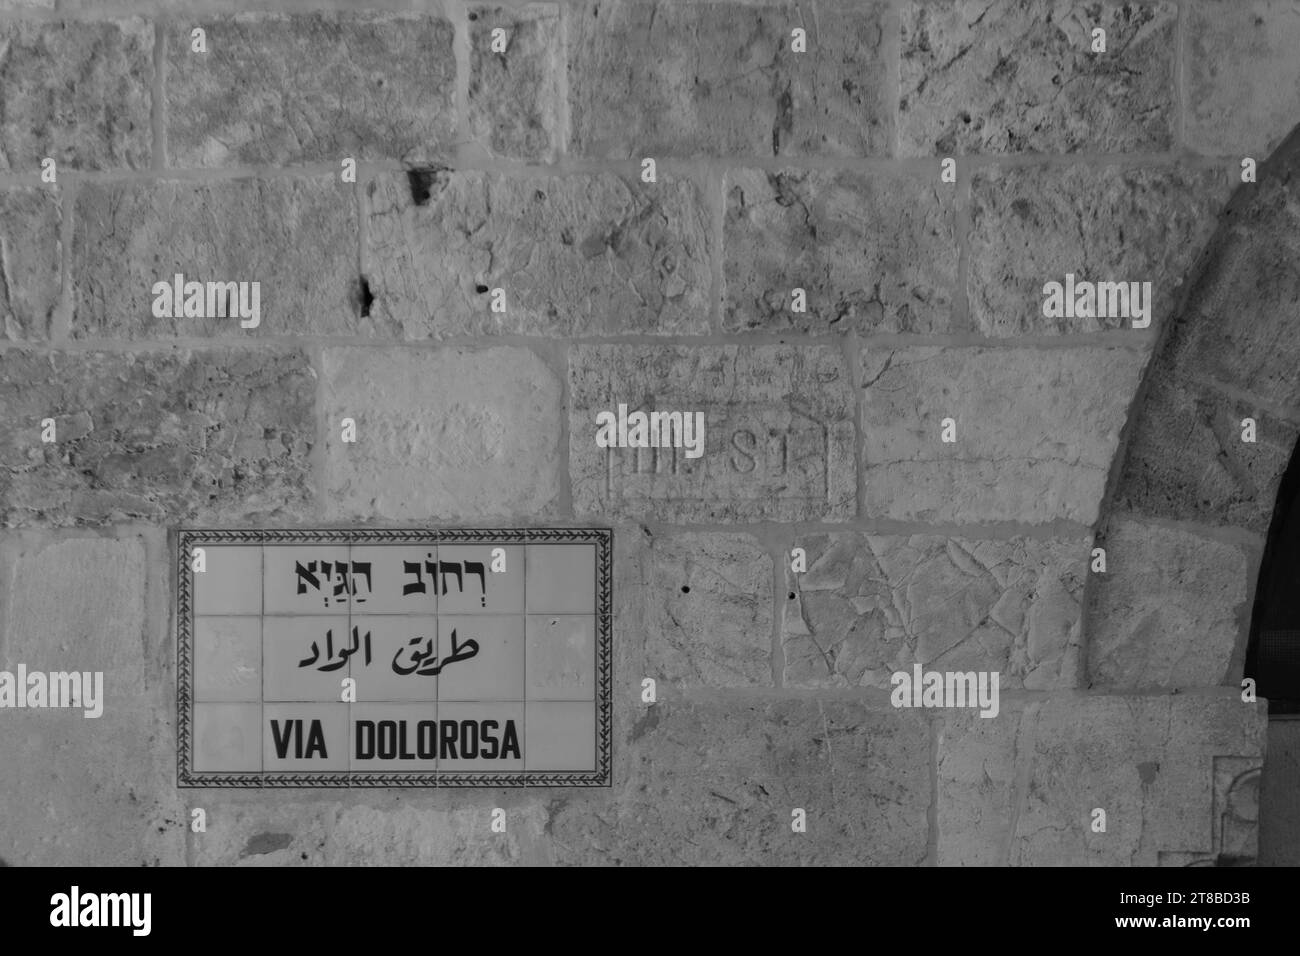 Via Dolorosa, Altstadt von Jerusalem, Israel. Er stellt den Weg dar, den Jesus auf dem Weg zu seiner Kreuzigung, von den römischen Soldaten gezwungen, eingeschlagen hat. Stockfoto